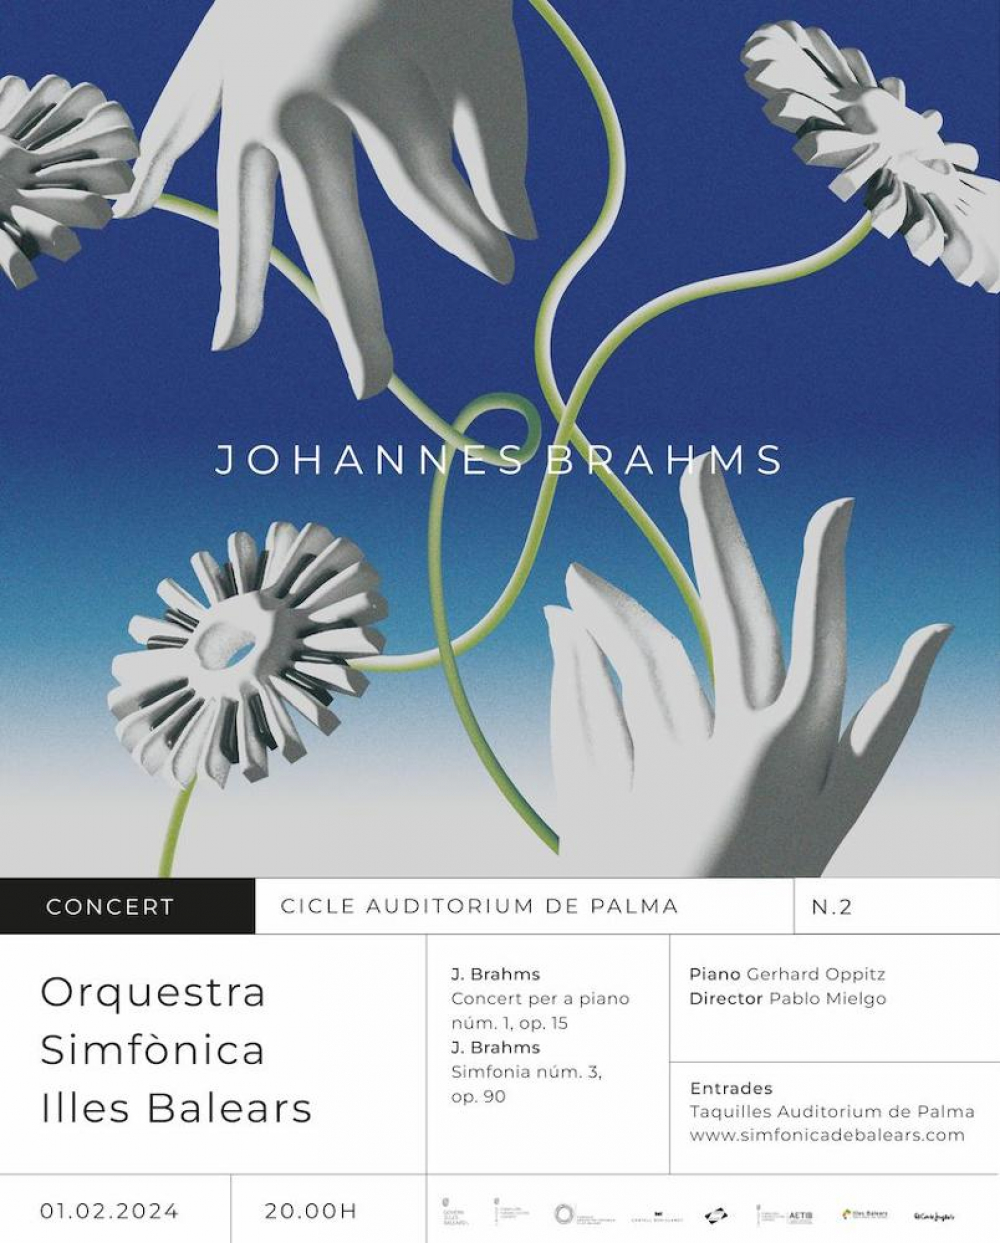 Johannes Brahms, protagonista en el segundo concierto de la Orquesta Sinfónica Illes Balears en el Auditorium de Palma